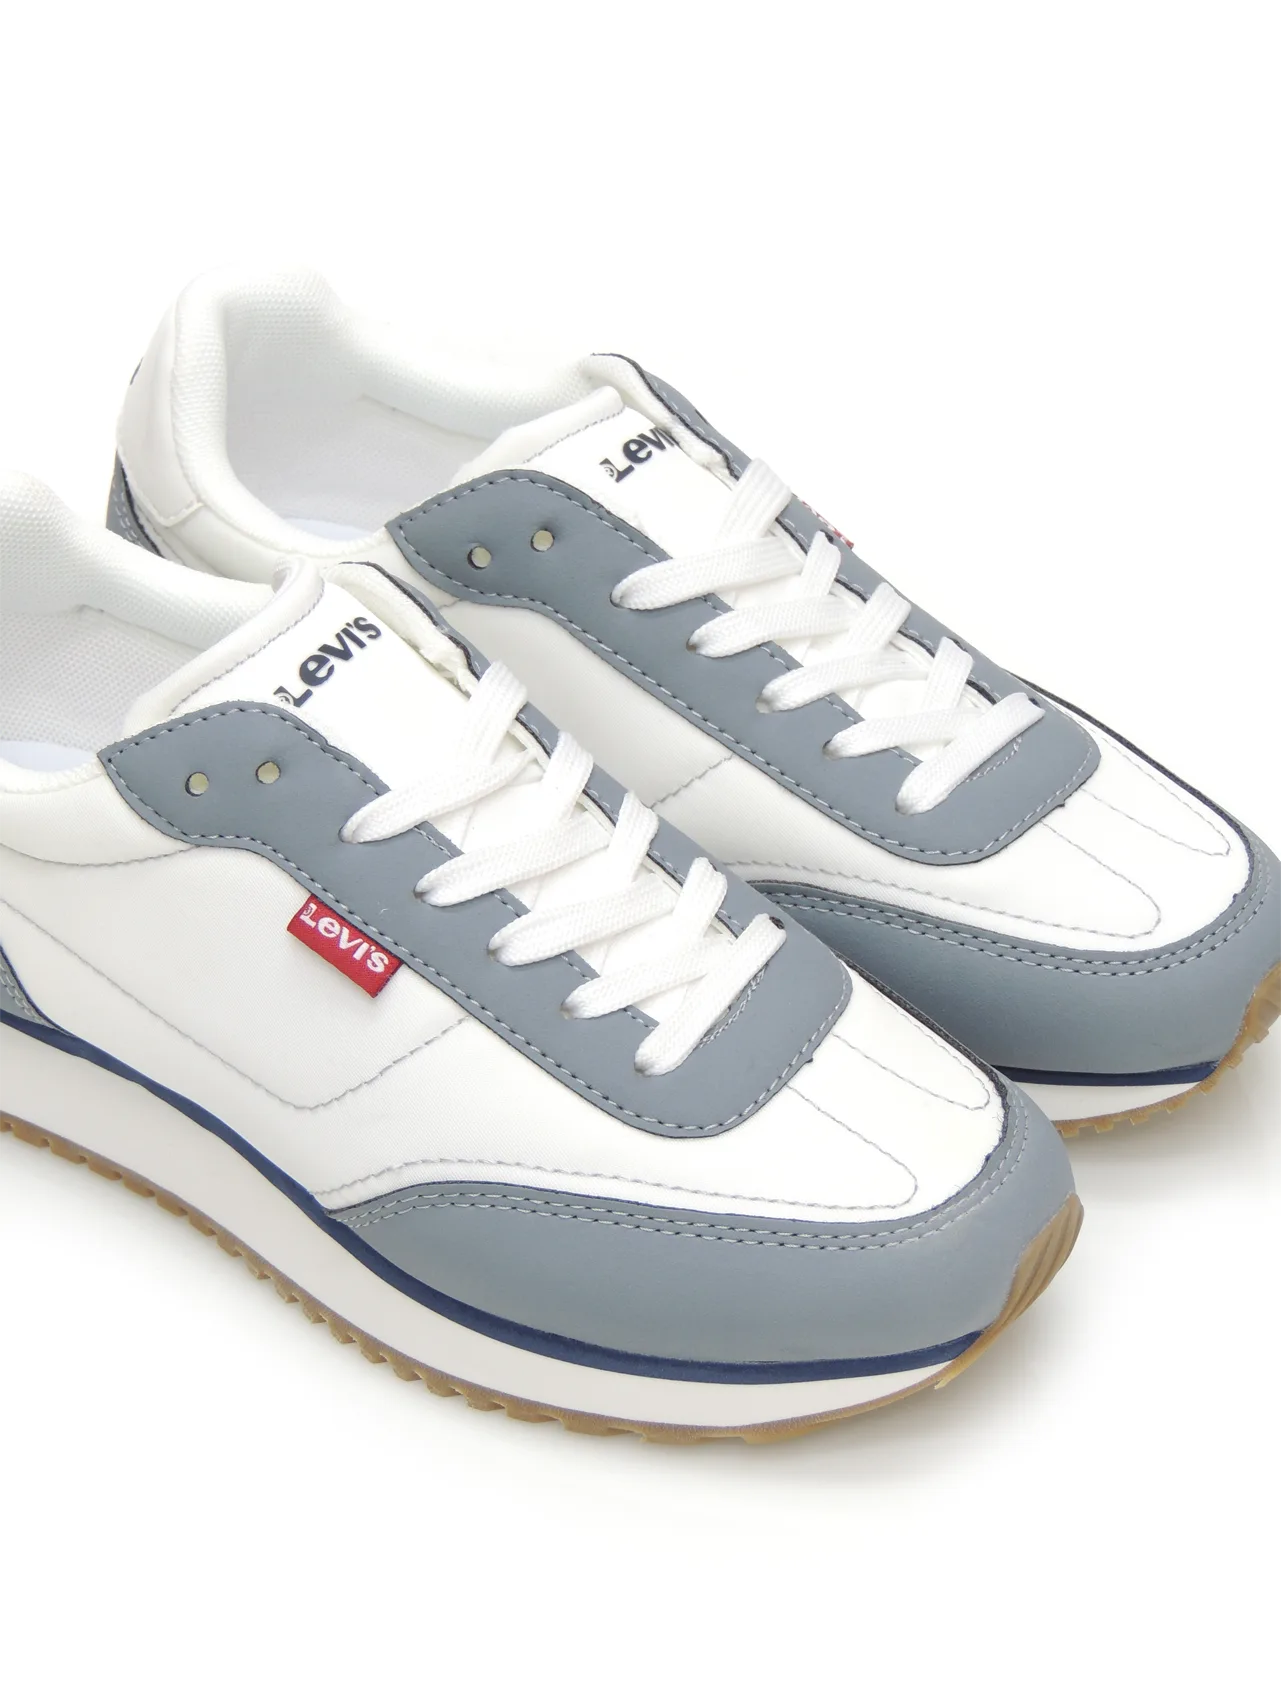 sneakers--levis-234706-textil-blanco